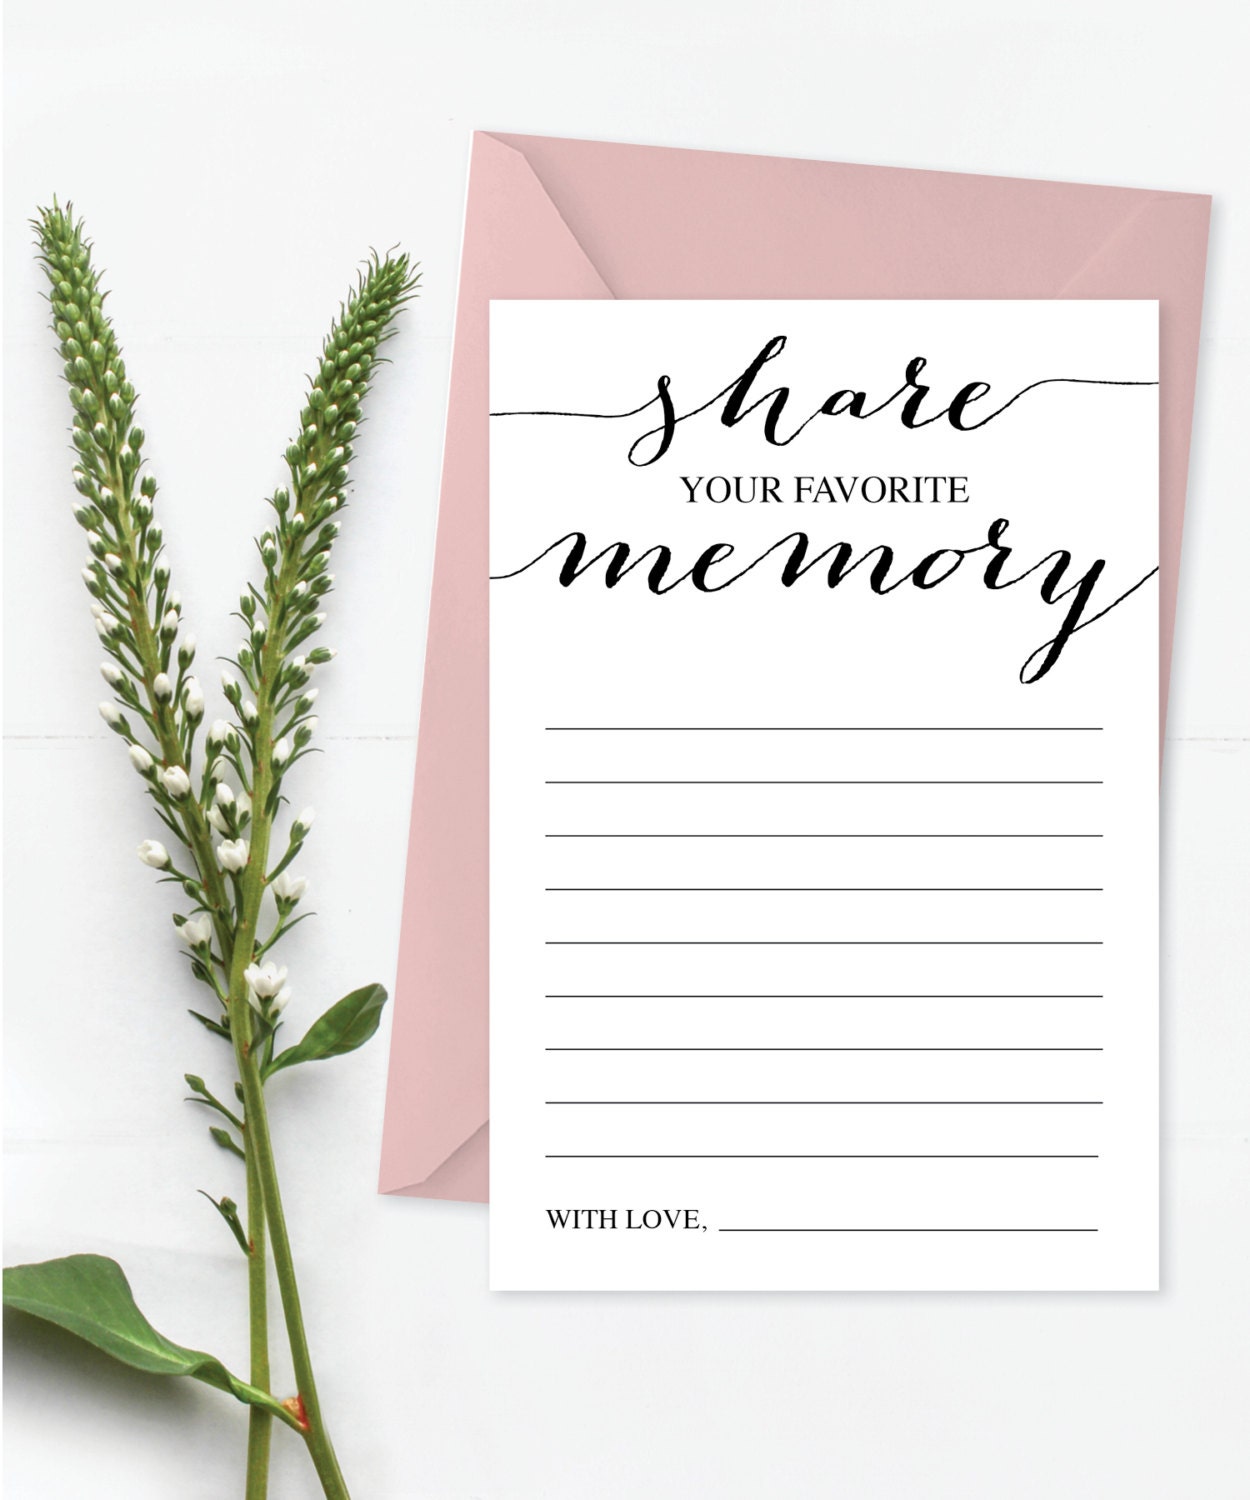 share-a-memory-card-favorite-memory-memorial-card